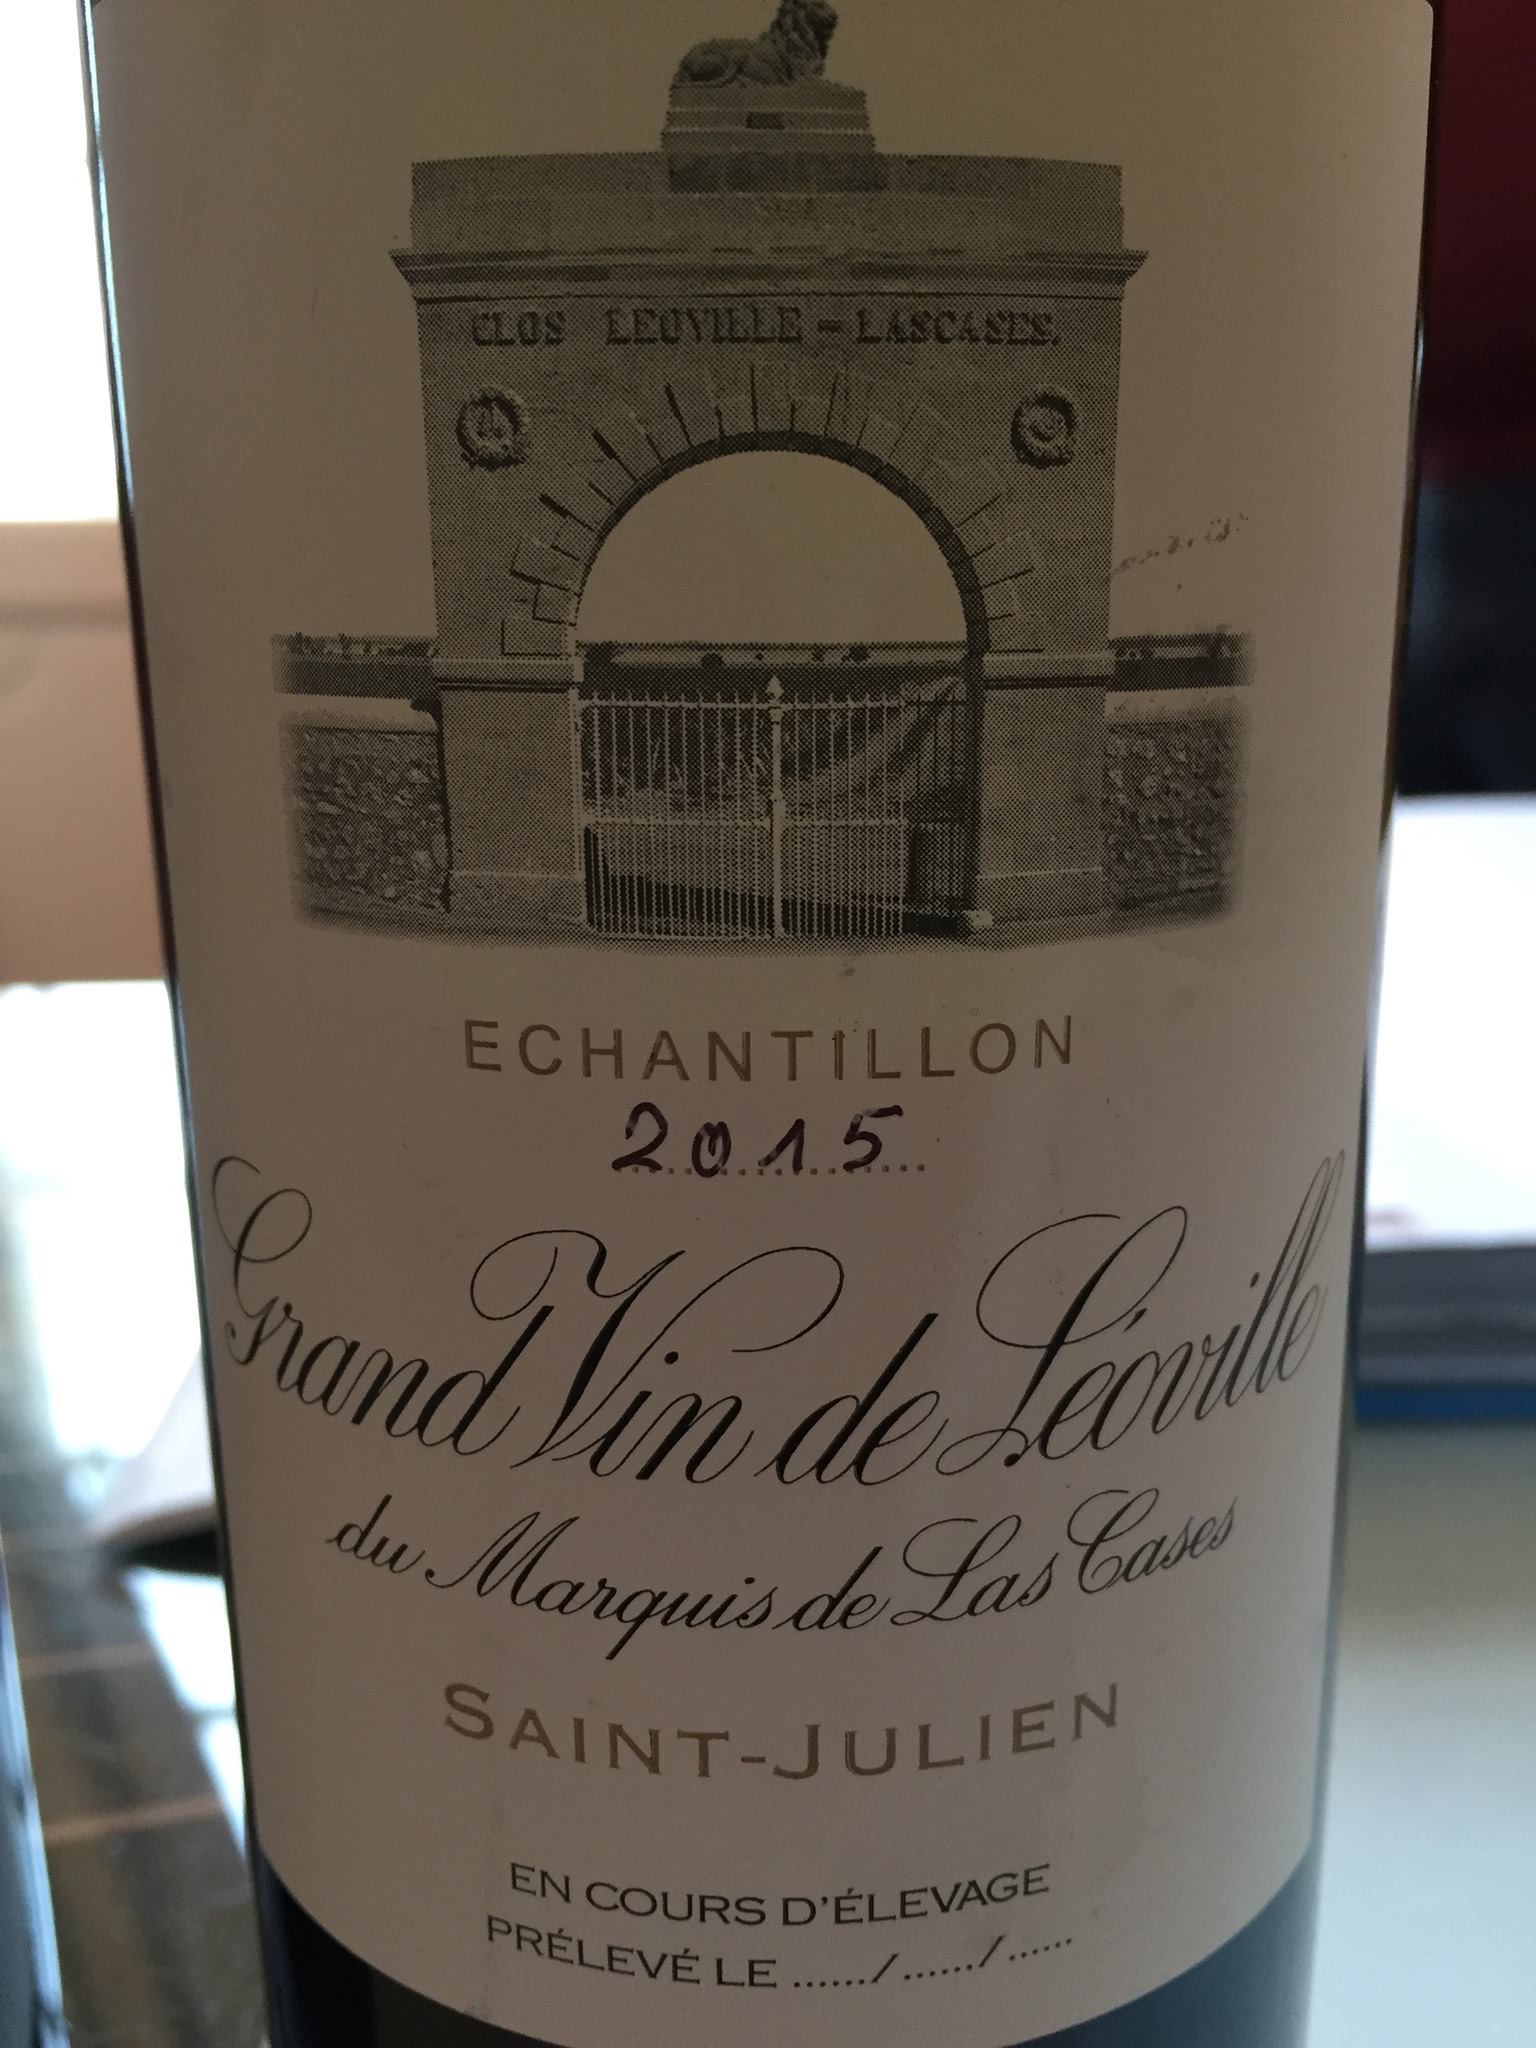 Grand Vin de Léoville du Marquis de Las Cases 2015 – Saint-Julien, Grand Cru Classé